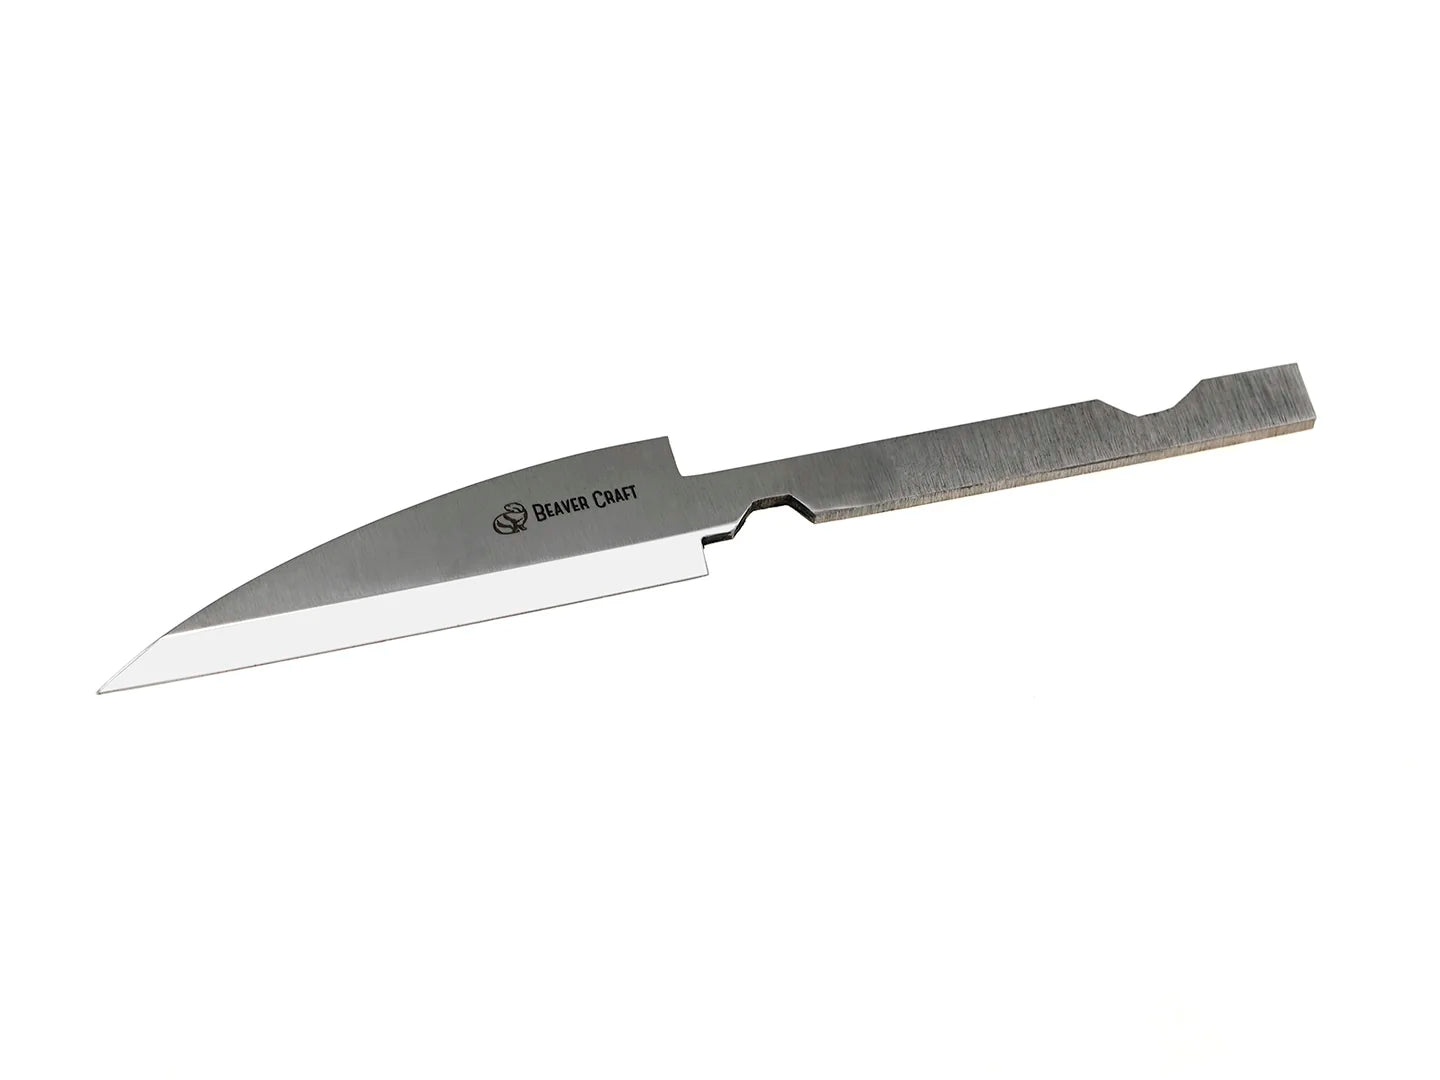 Blade for whittling knife wood carving online - BeaverCraft – BeaverCraft  Tools